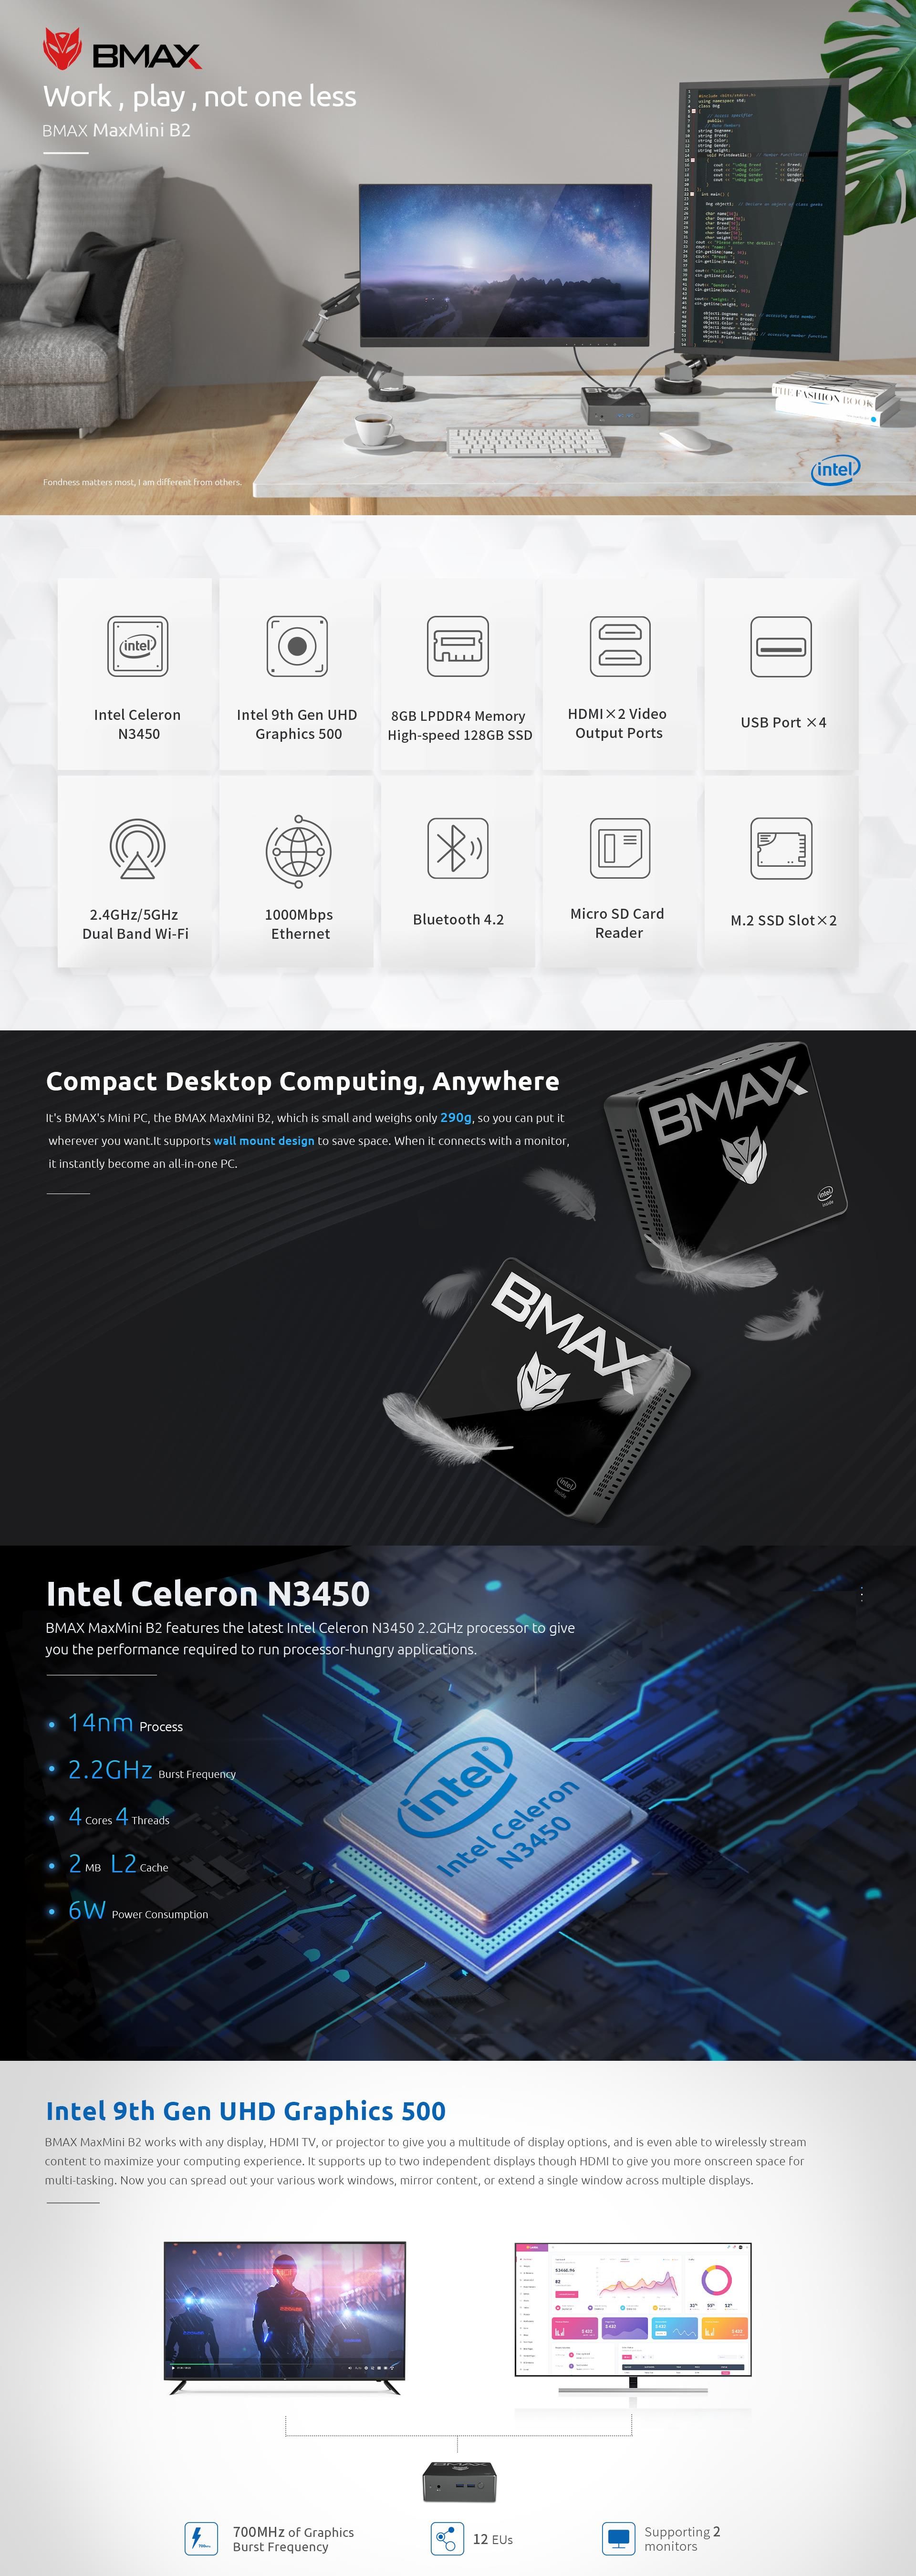 BMAX-B2-Mini-PC-Intel-Celeron-N3450-8GB-LPDDR4-128GB-SSD-Intel-HD-Graphics-500-1677997